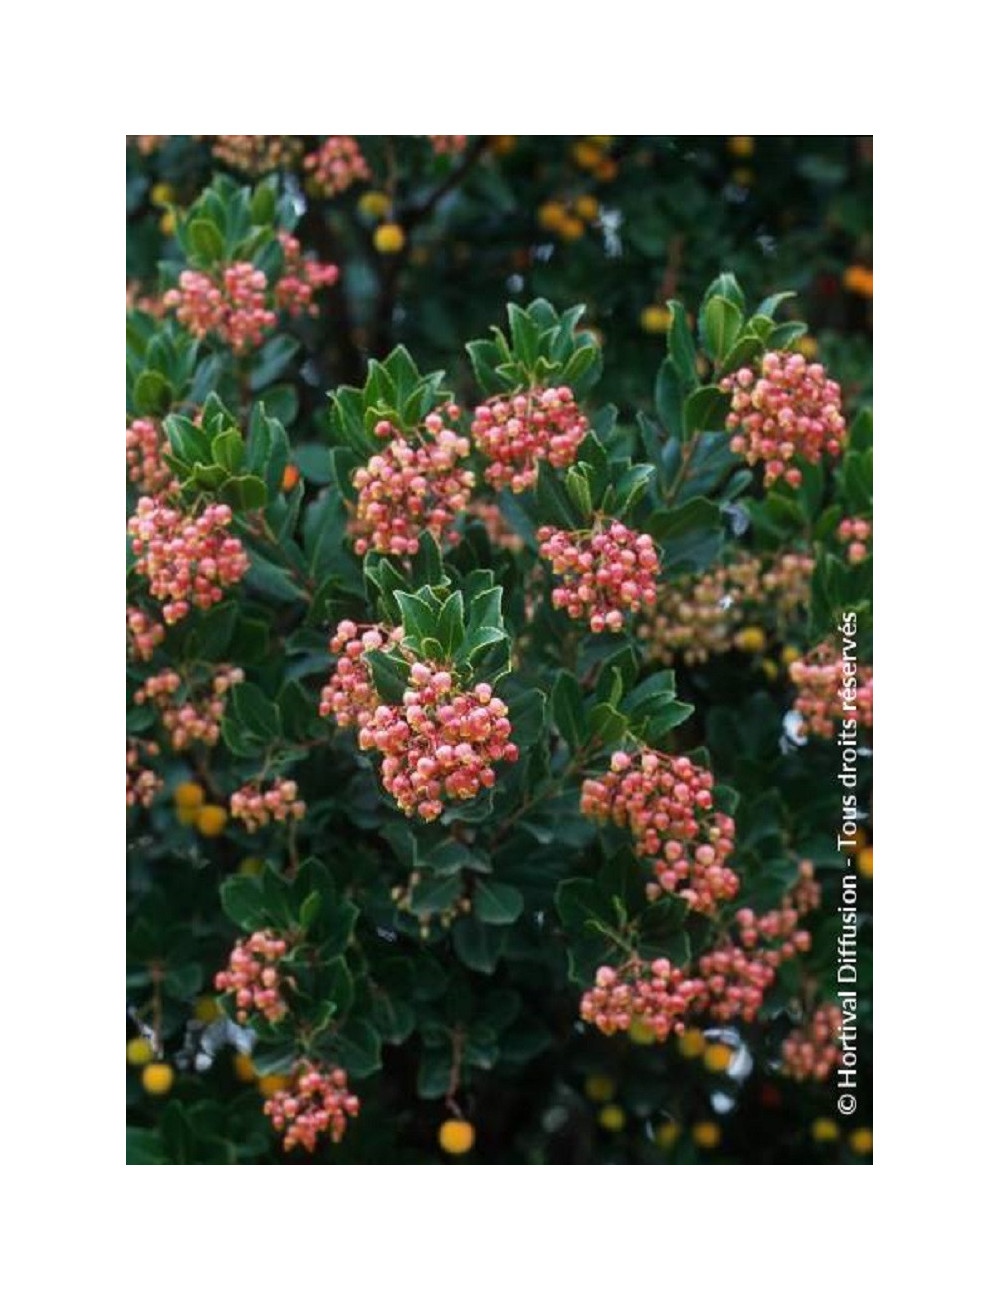 ARBUTUS unedo RUBRA (Arbousier, arbre aux fraises)